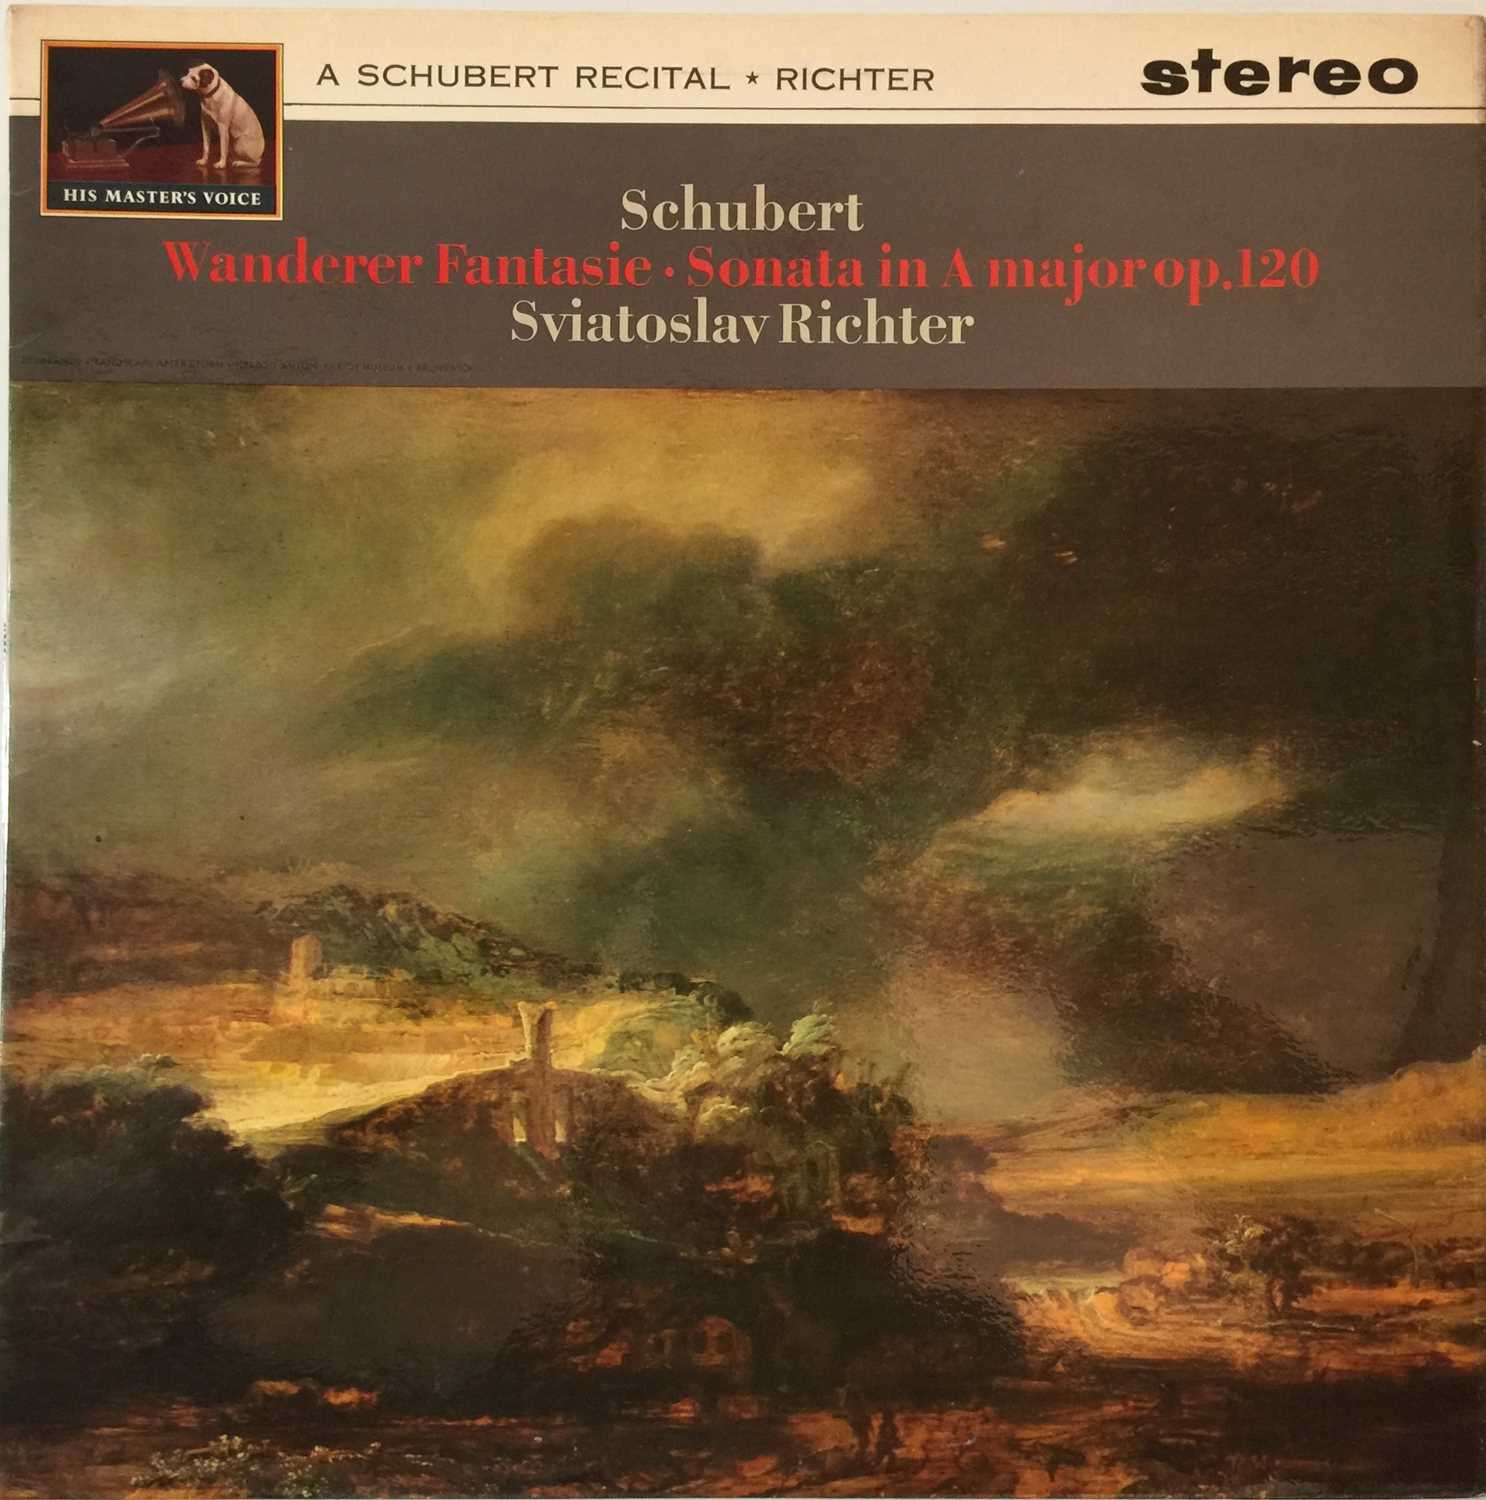 Lot 640 - Sviatoslav Richter - A Schubert Recital LP (Original UK HMV Stereo Recording - ASD 561)